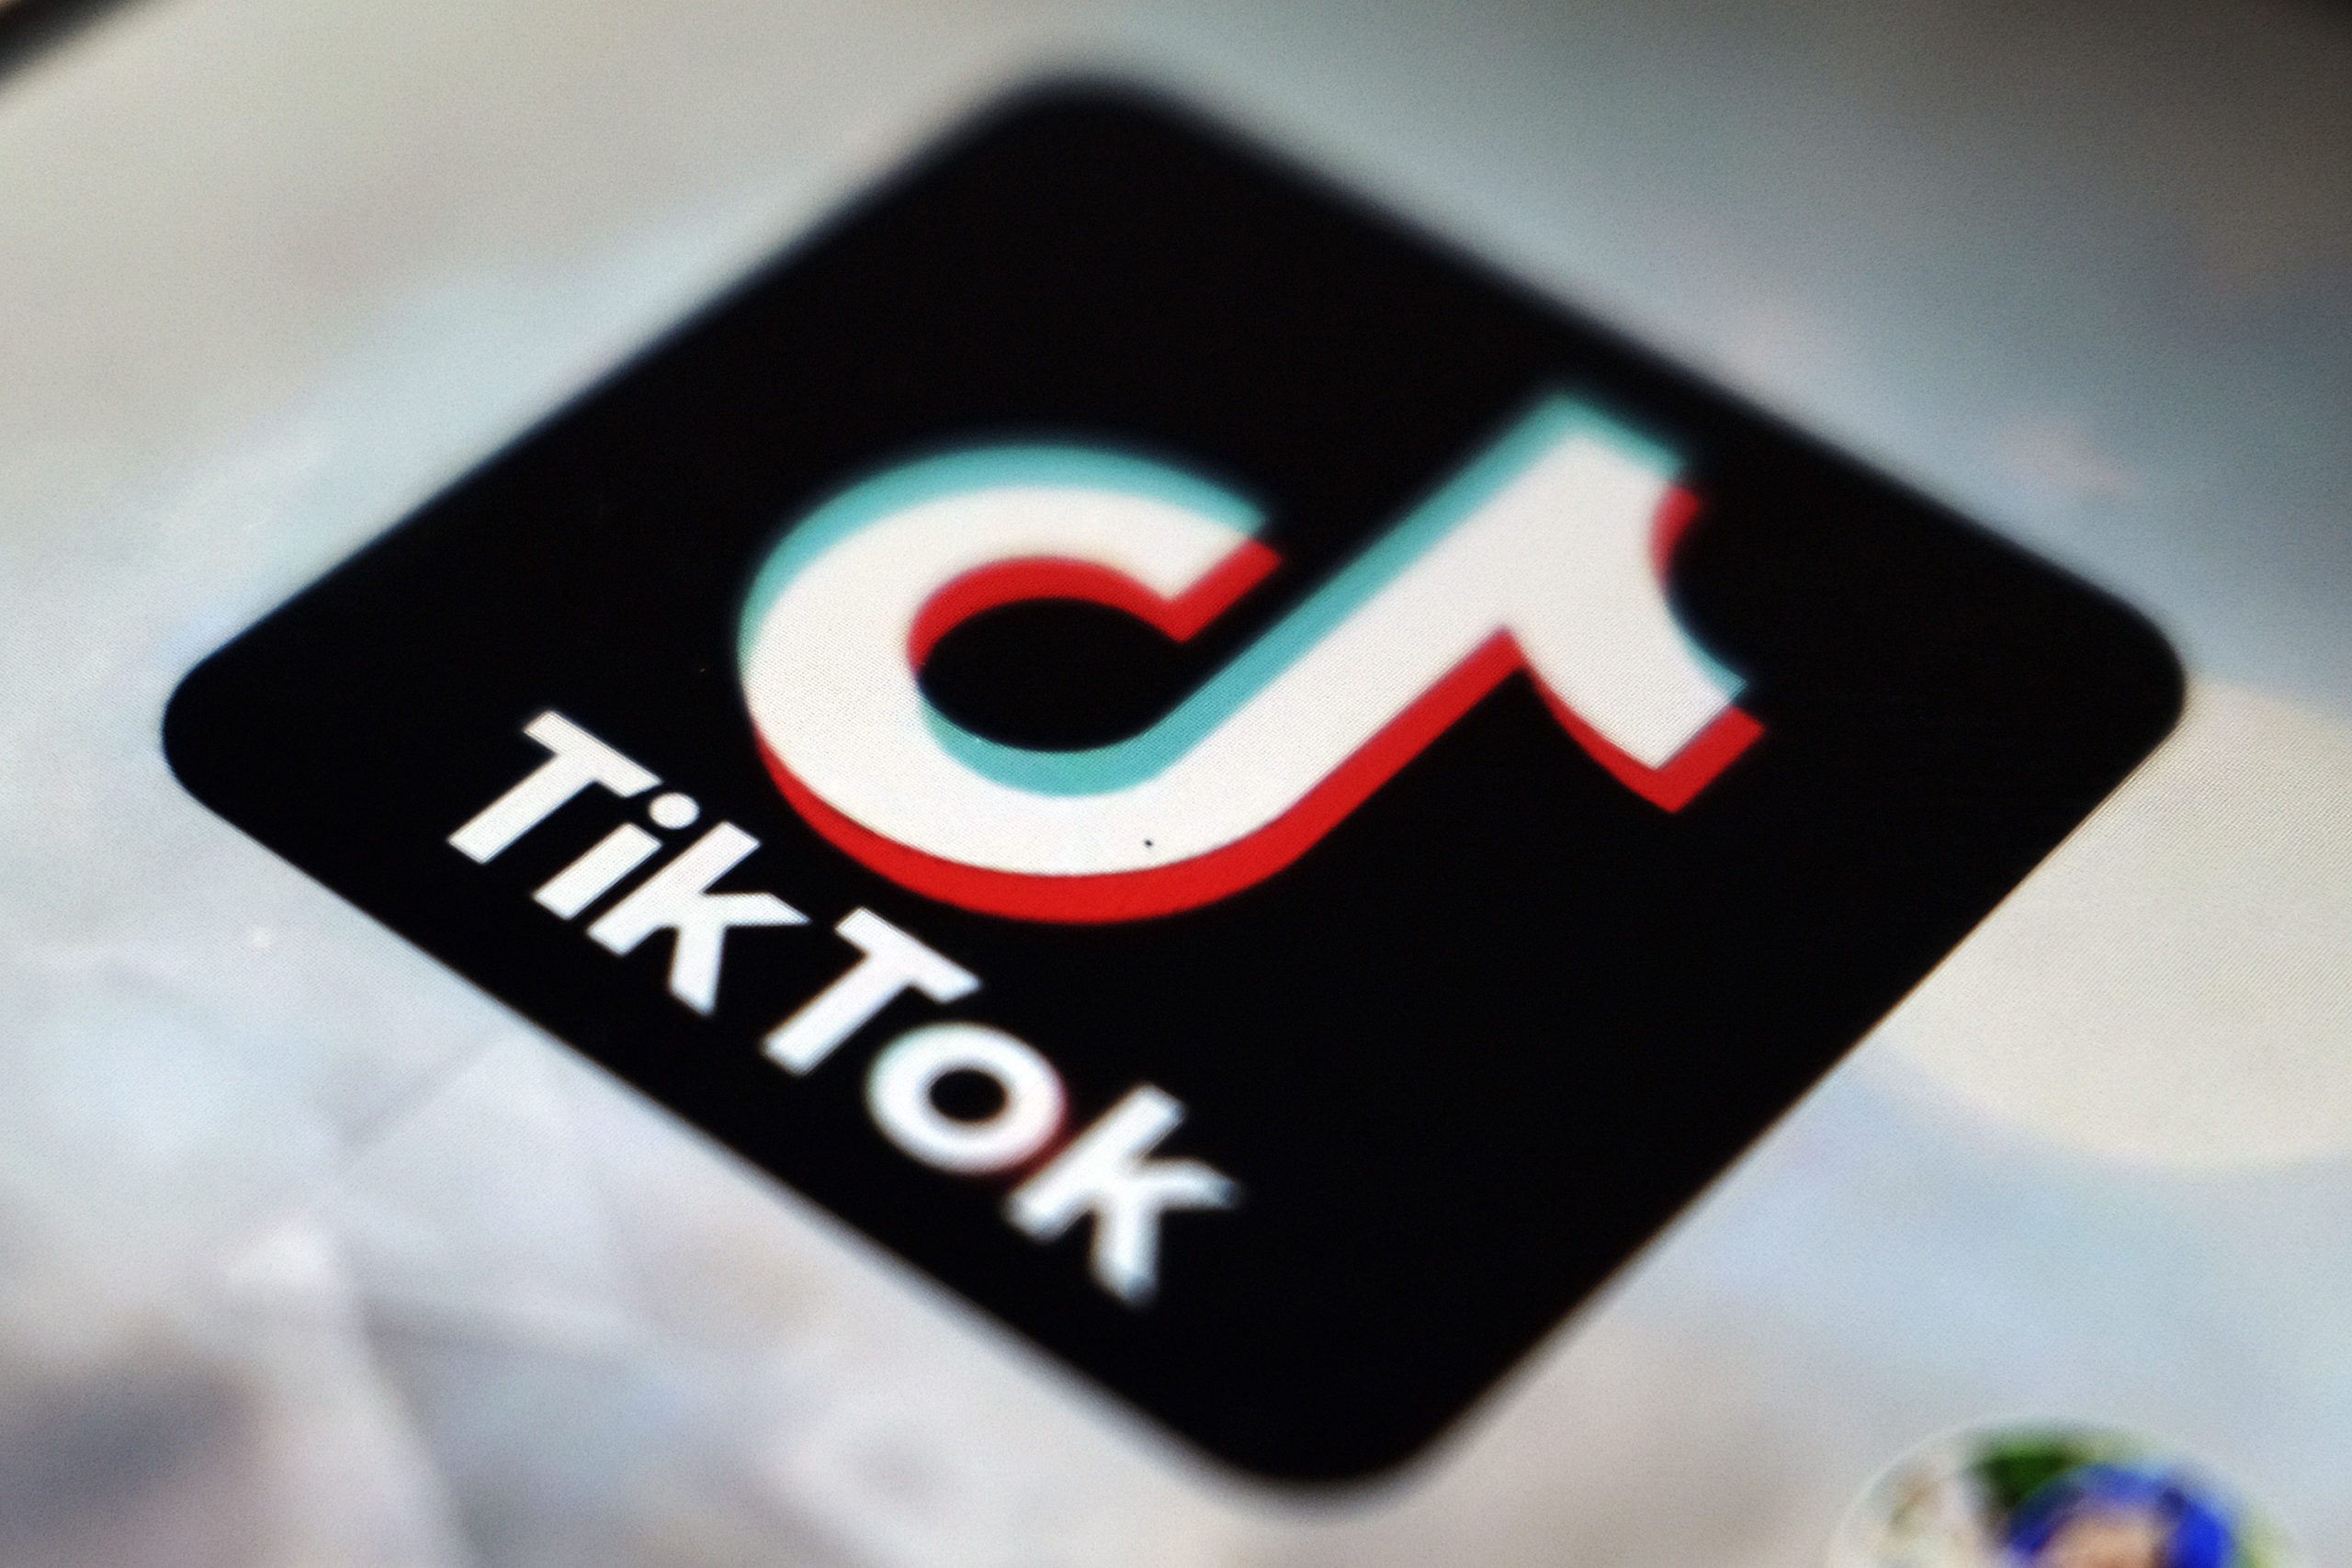 ΗΠΑ: Η Μοντάνα, η πρώτη πολιτεία που απαγορεύει την εφαρμογή TikTok